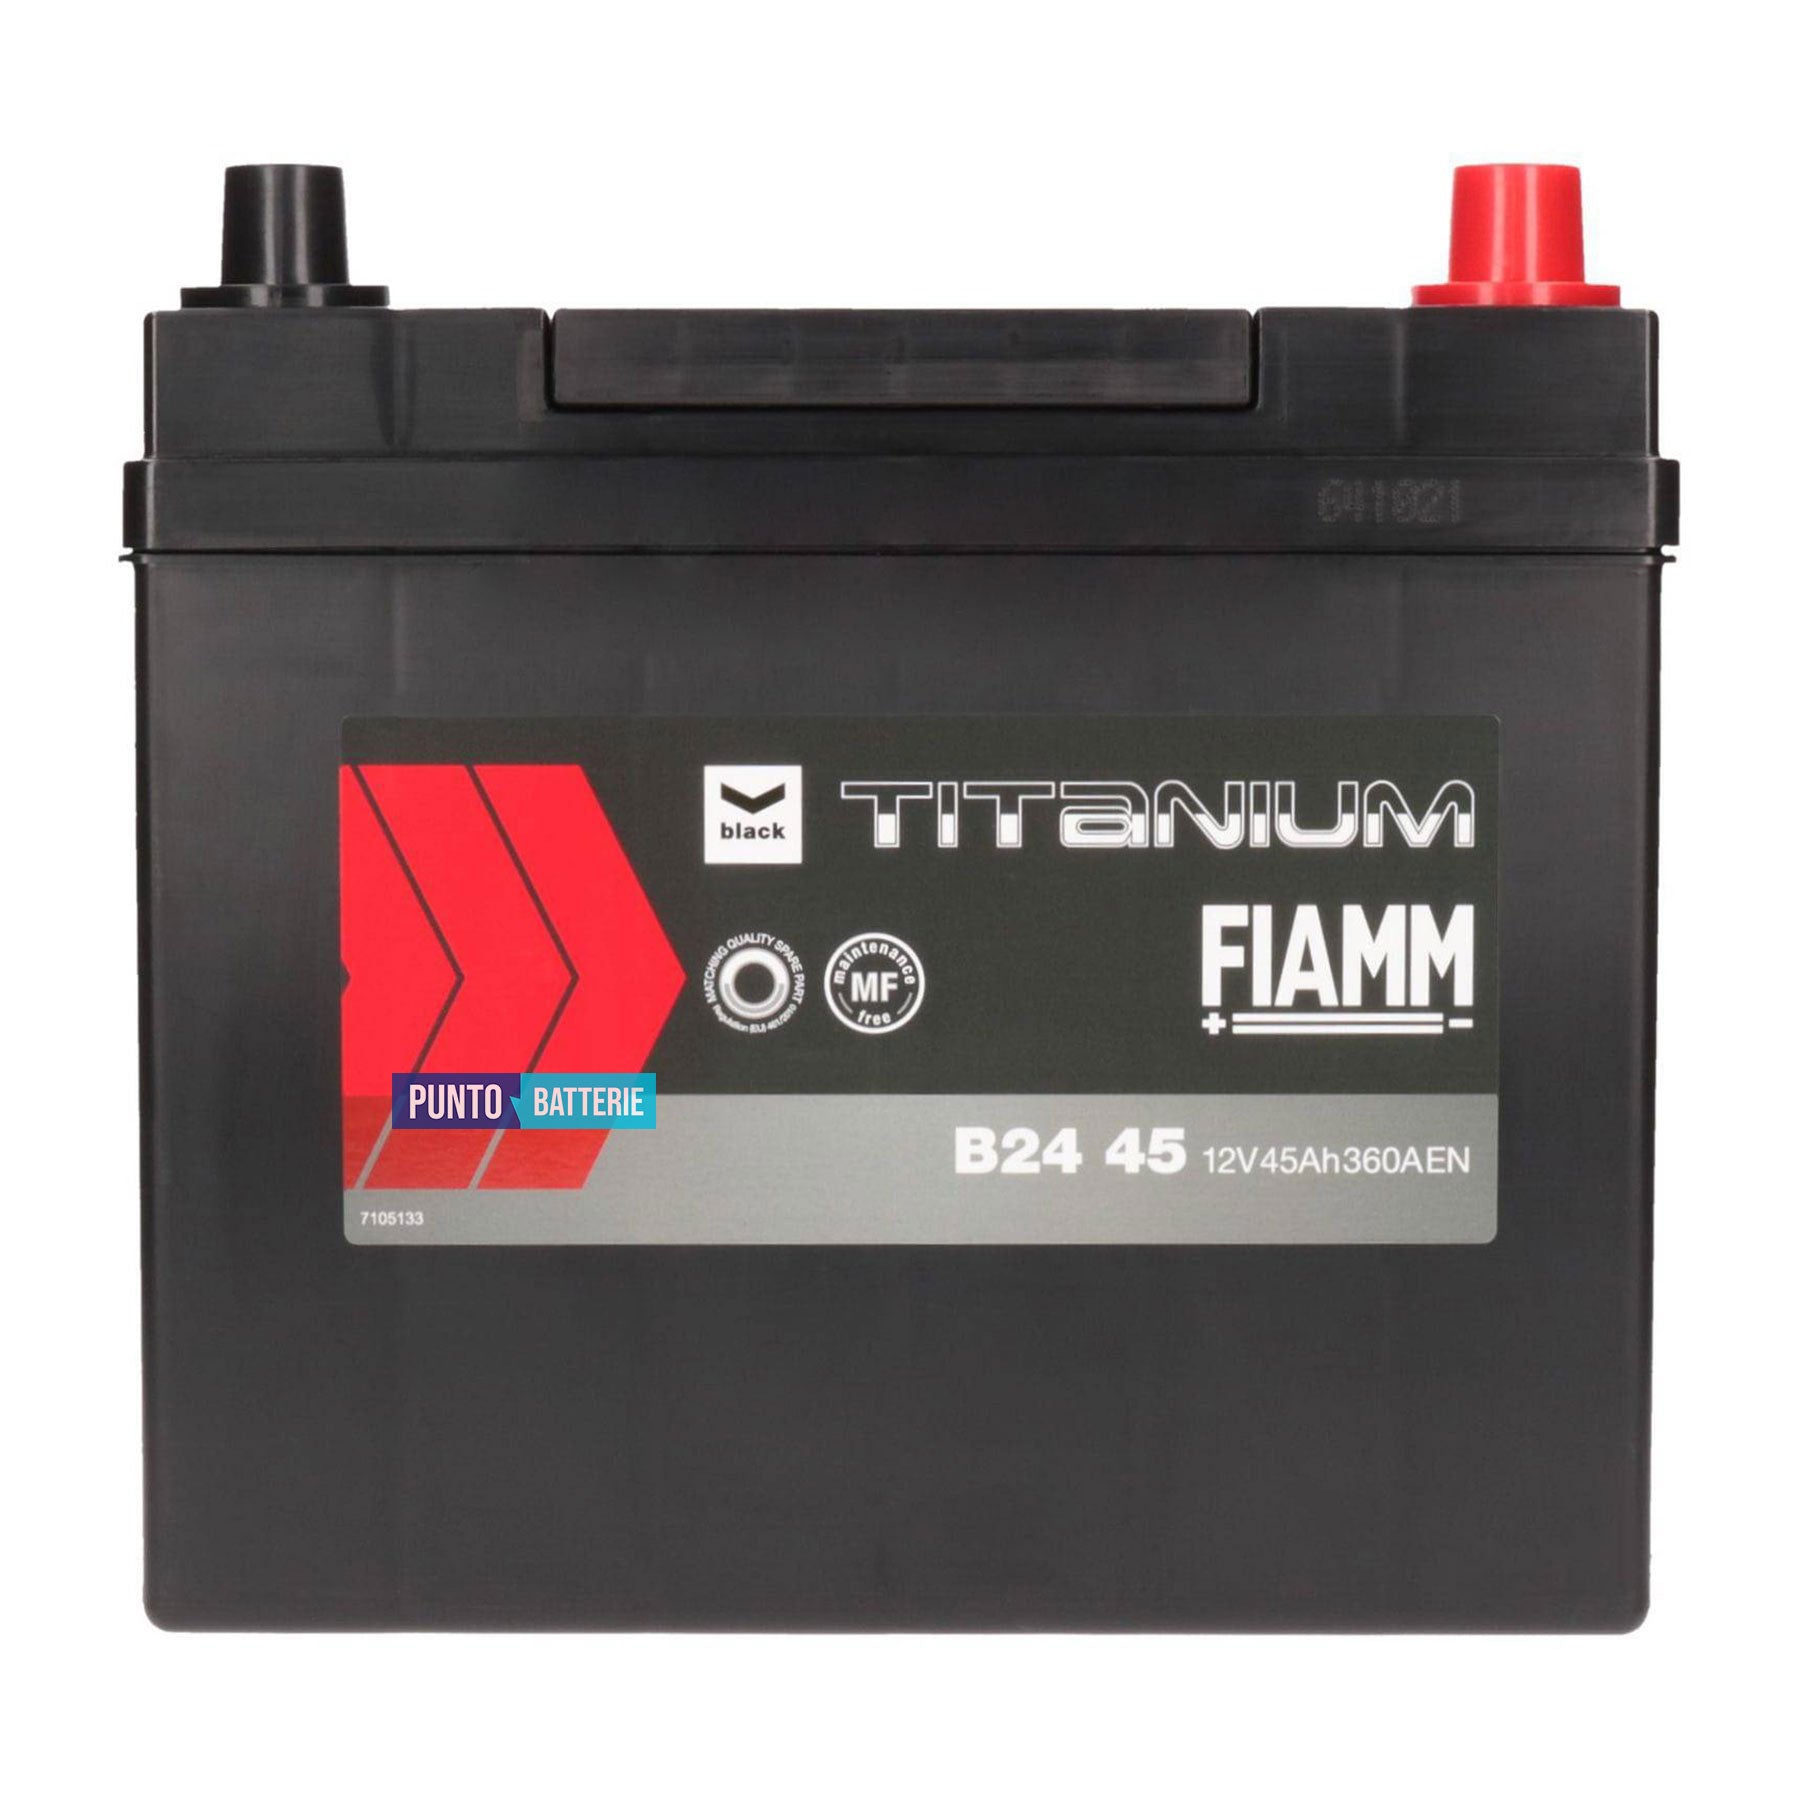 Batteria Fiamm 45Ah, 12V, 360A, 237x128x225mm